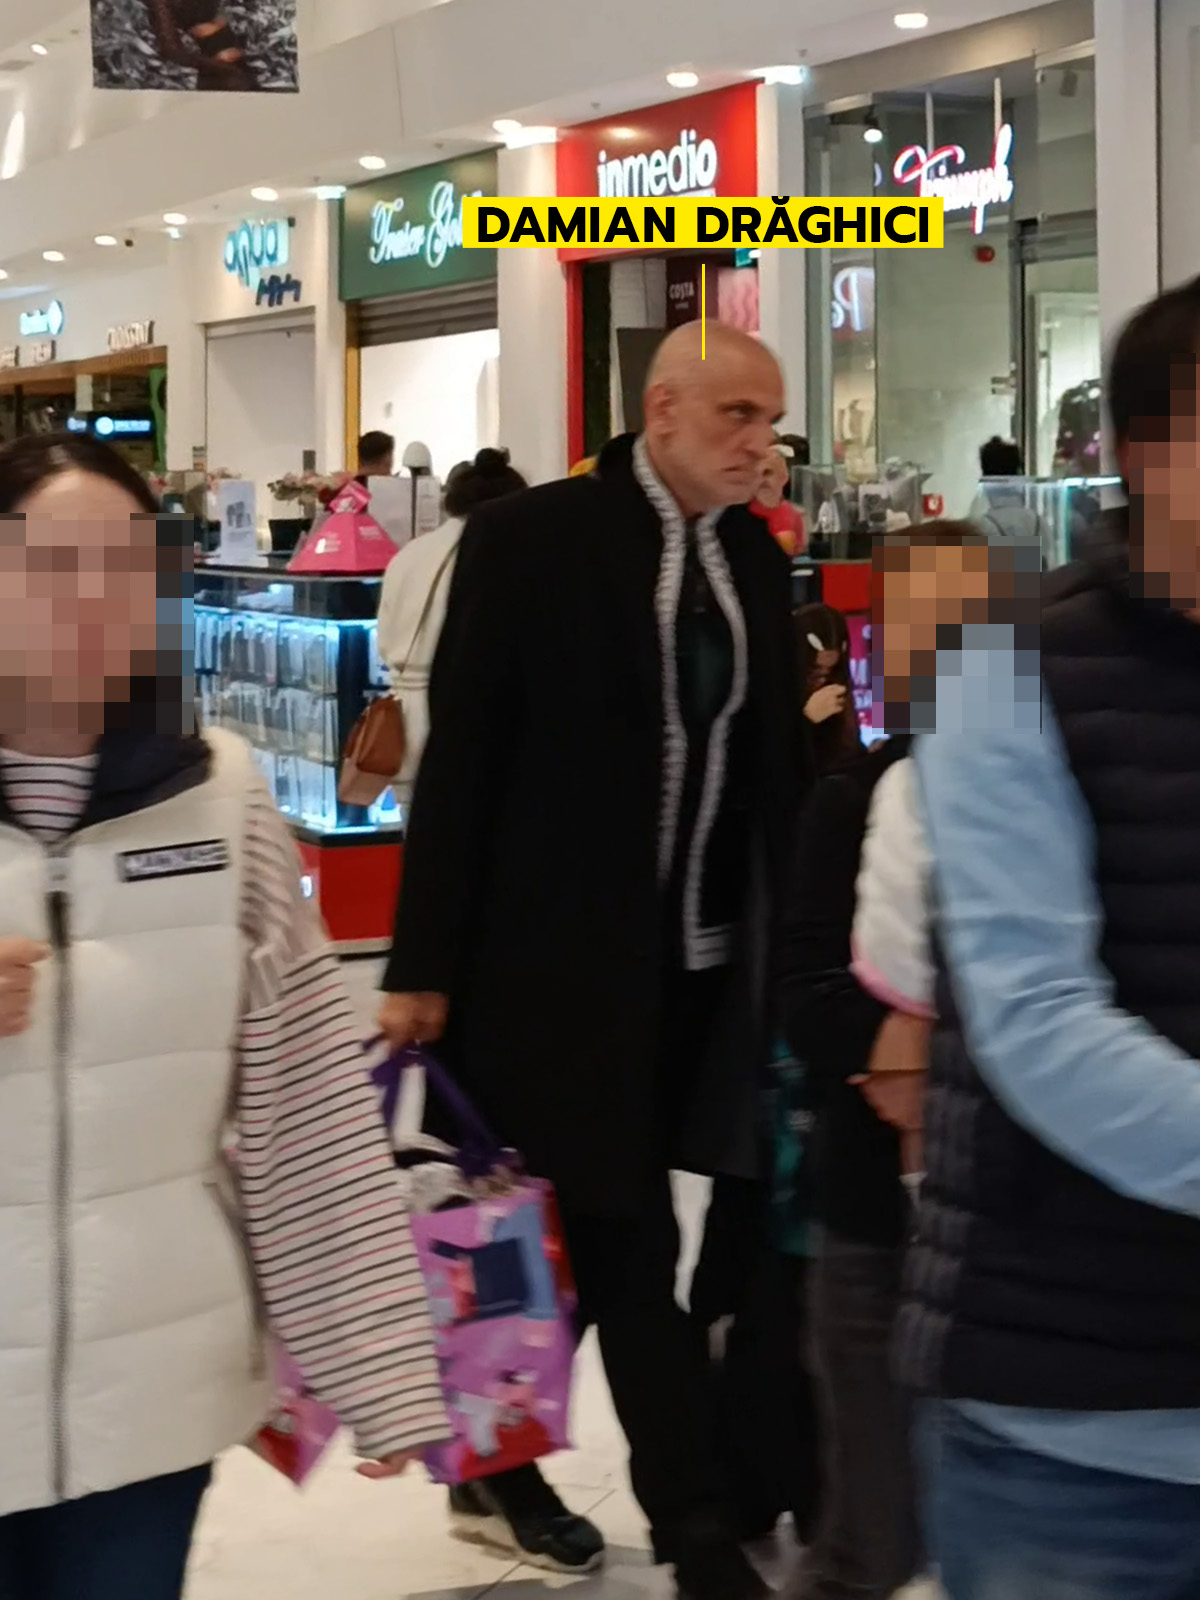 Încărcat cu cumpărături, Damian Drăghici se deplasează cu greutate